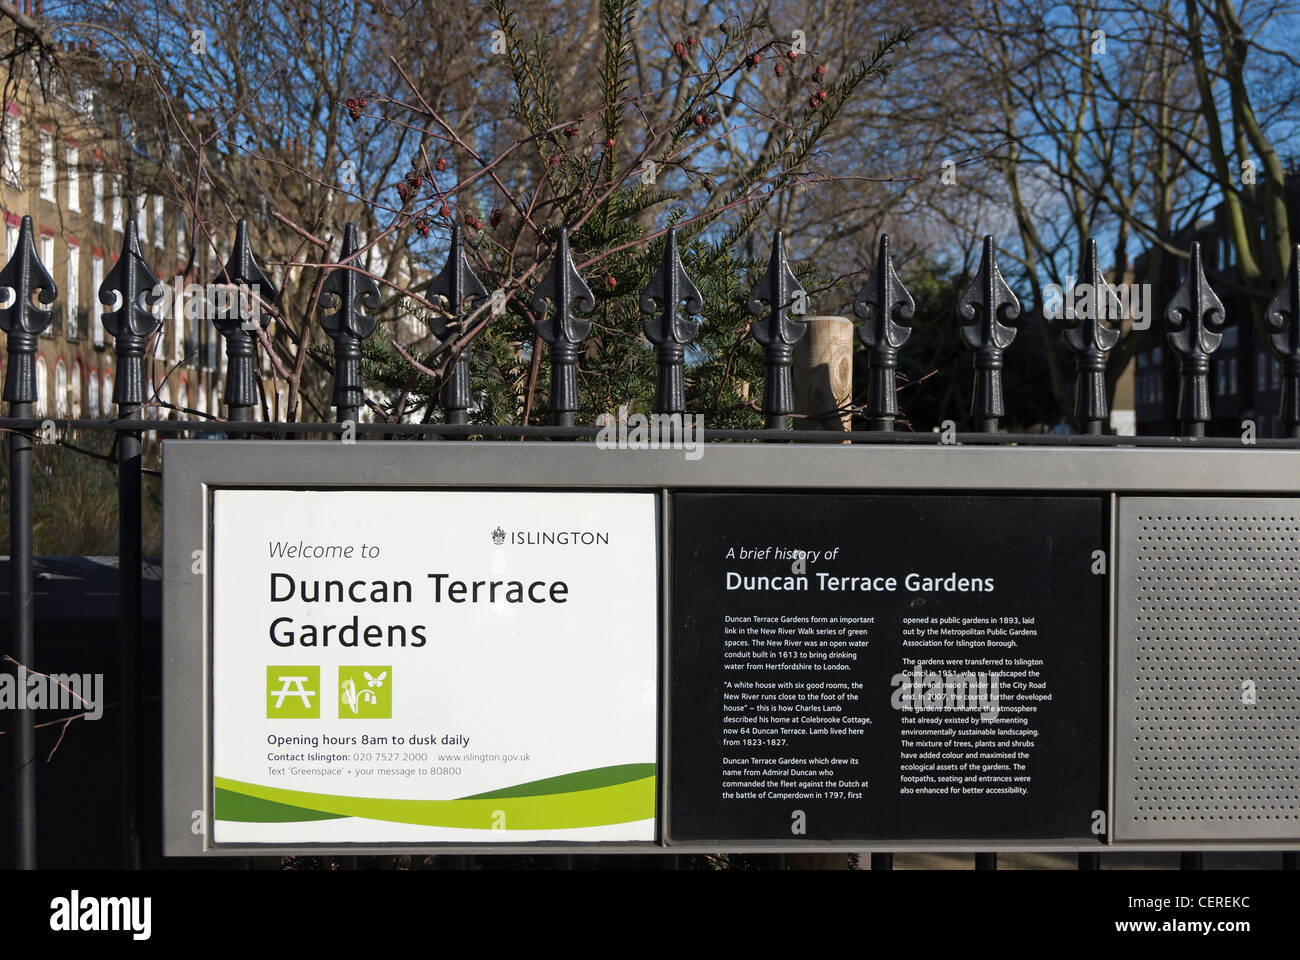 Information board à duncan terrace gardens, vu derrière des balustrades, Islington, Londres, Angleterre Banque D'Images